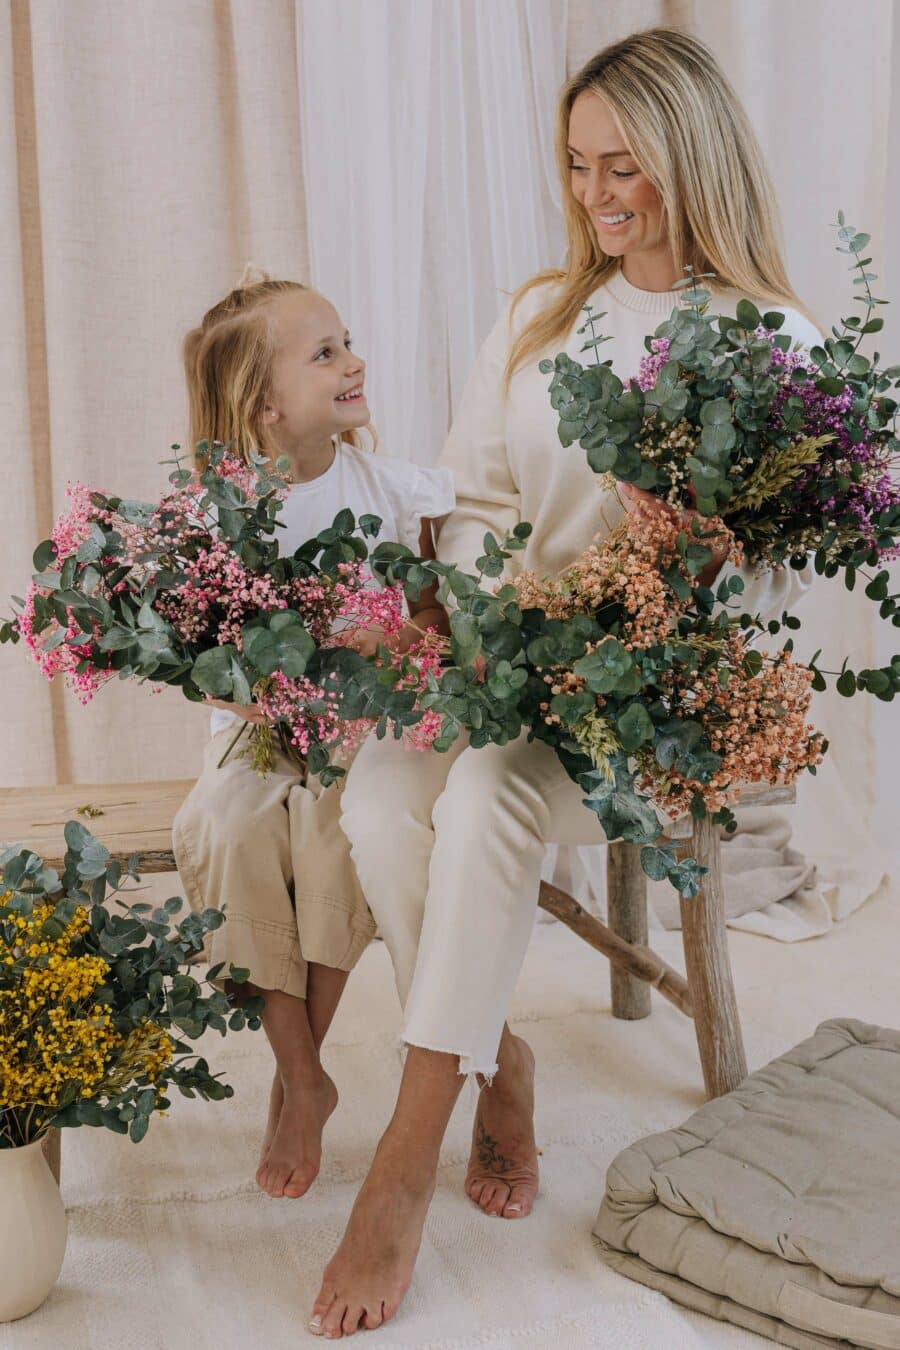 Encuentra el arreglo floral perfecto para el Día de la Madre. Sorprende a mamá con la belleza eterna de nuestras flores preservadas. ¡Haz clic para explorar nuestras opciones!